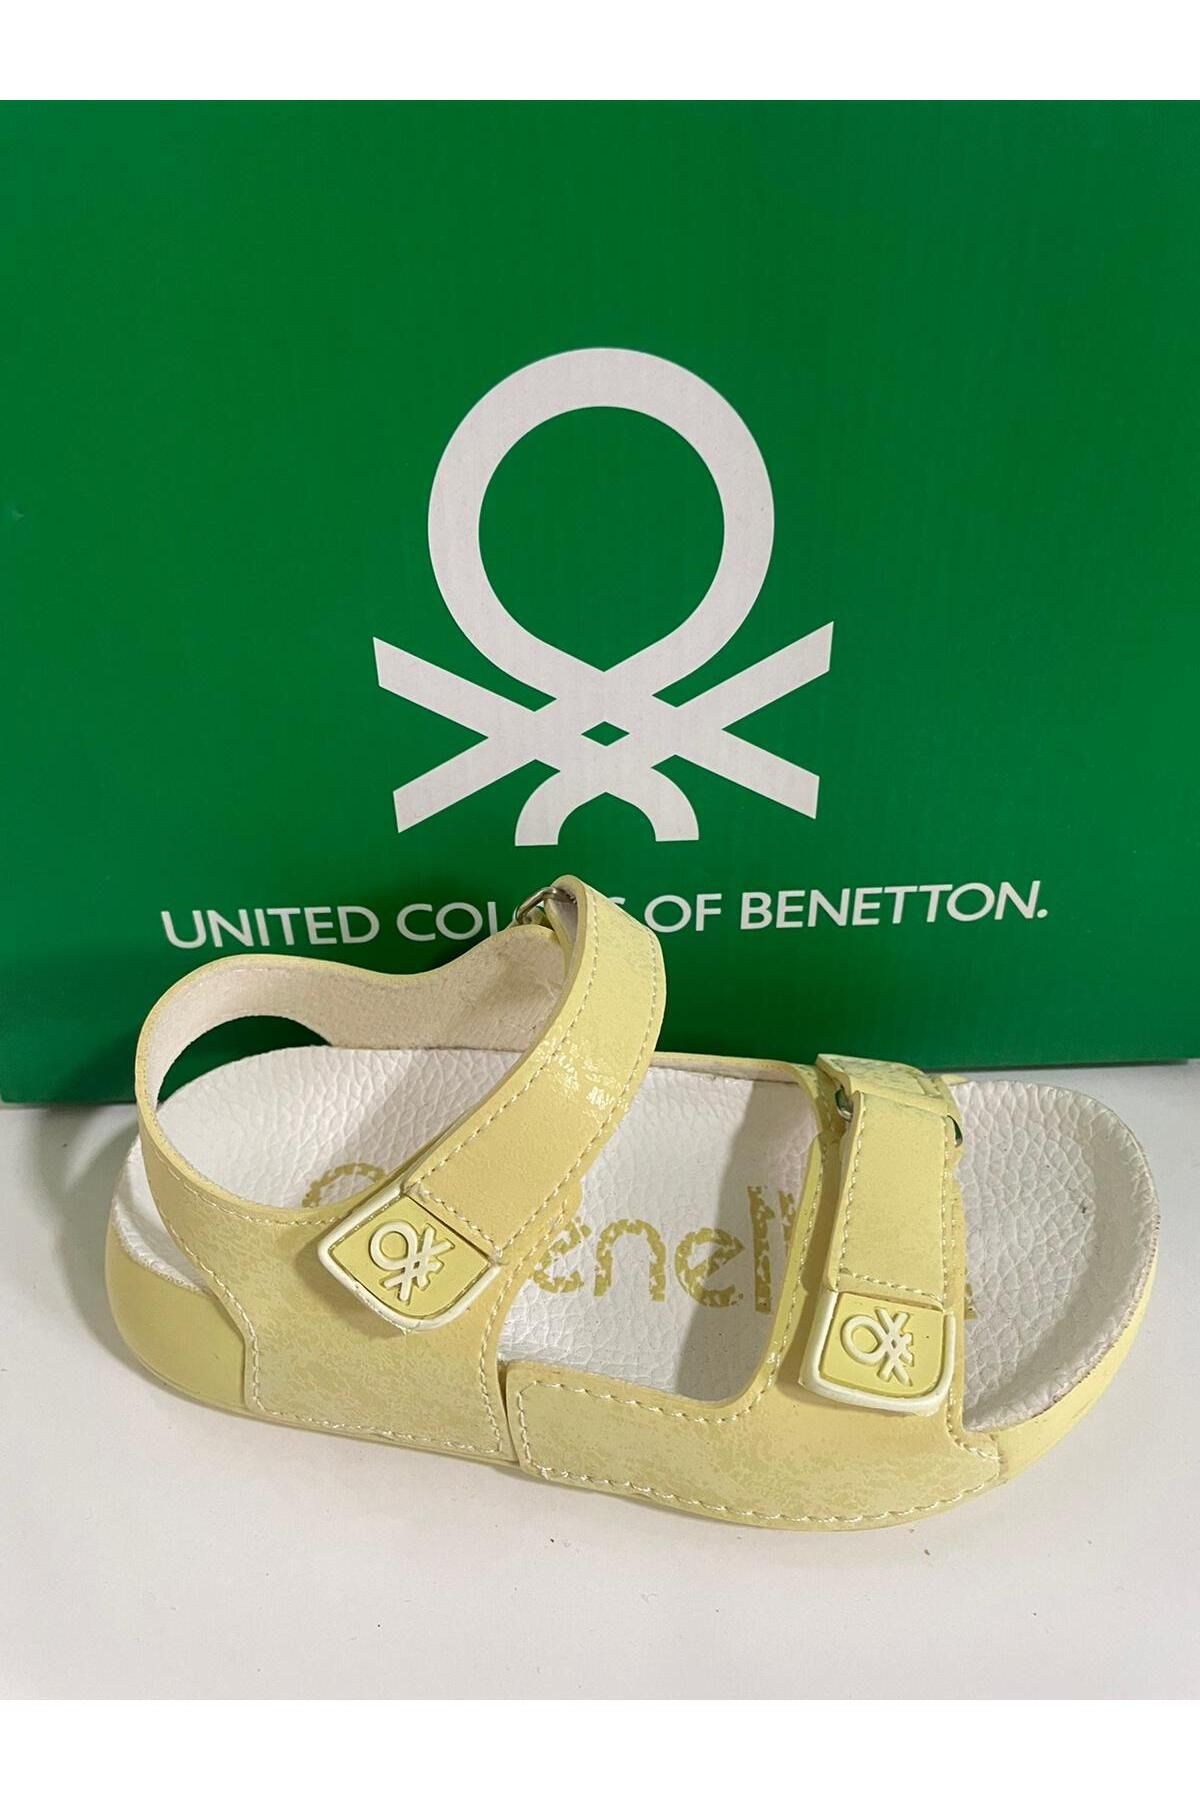 Benetton ®|BN-1238- Çocuk Sandalet